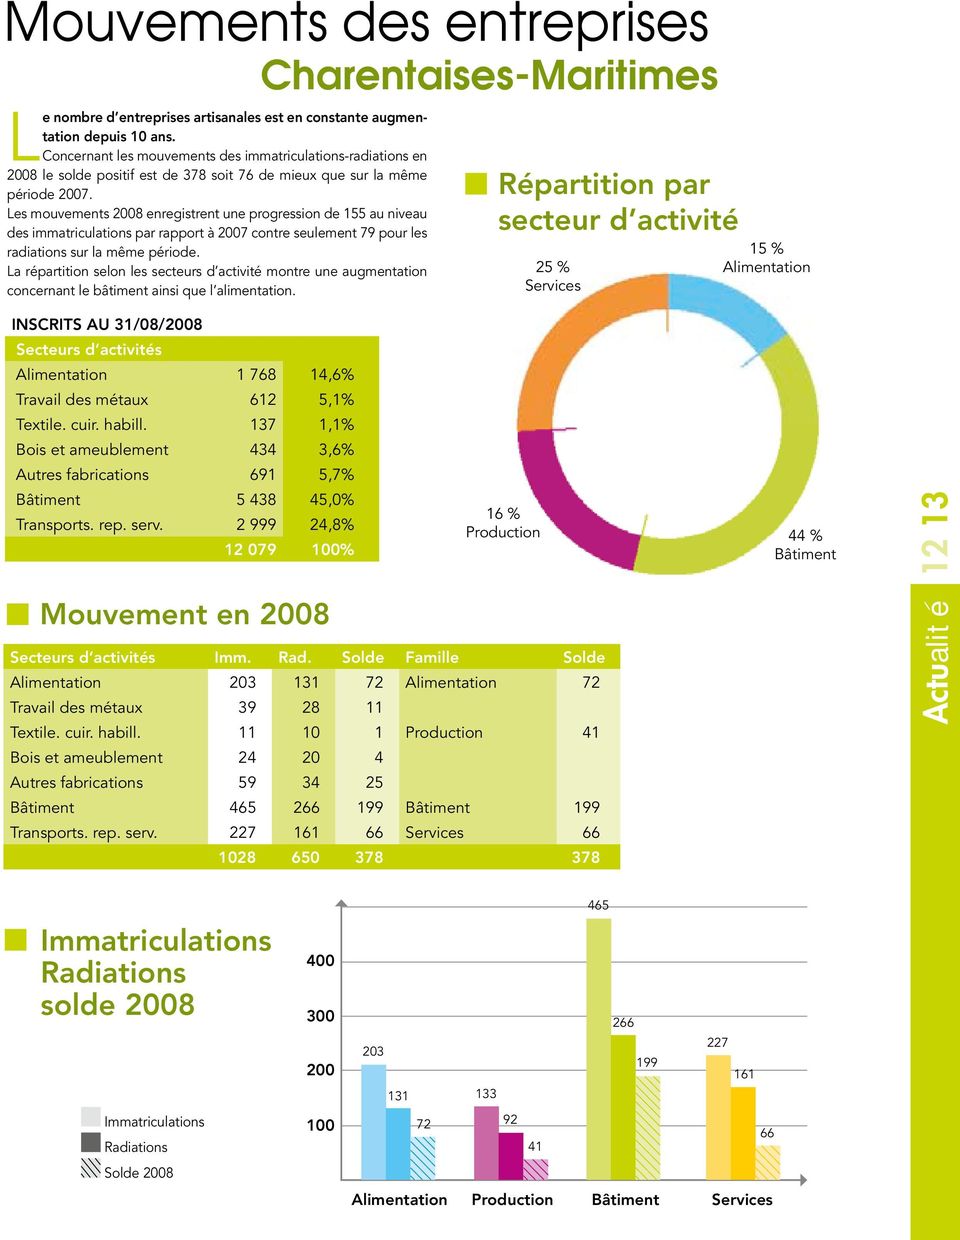 Les mouvements 2008 enregistrent une progression de 155 au niveau des immatriculations par rapport à 2007 contre seulement 79 pour les radiations sur la même période.